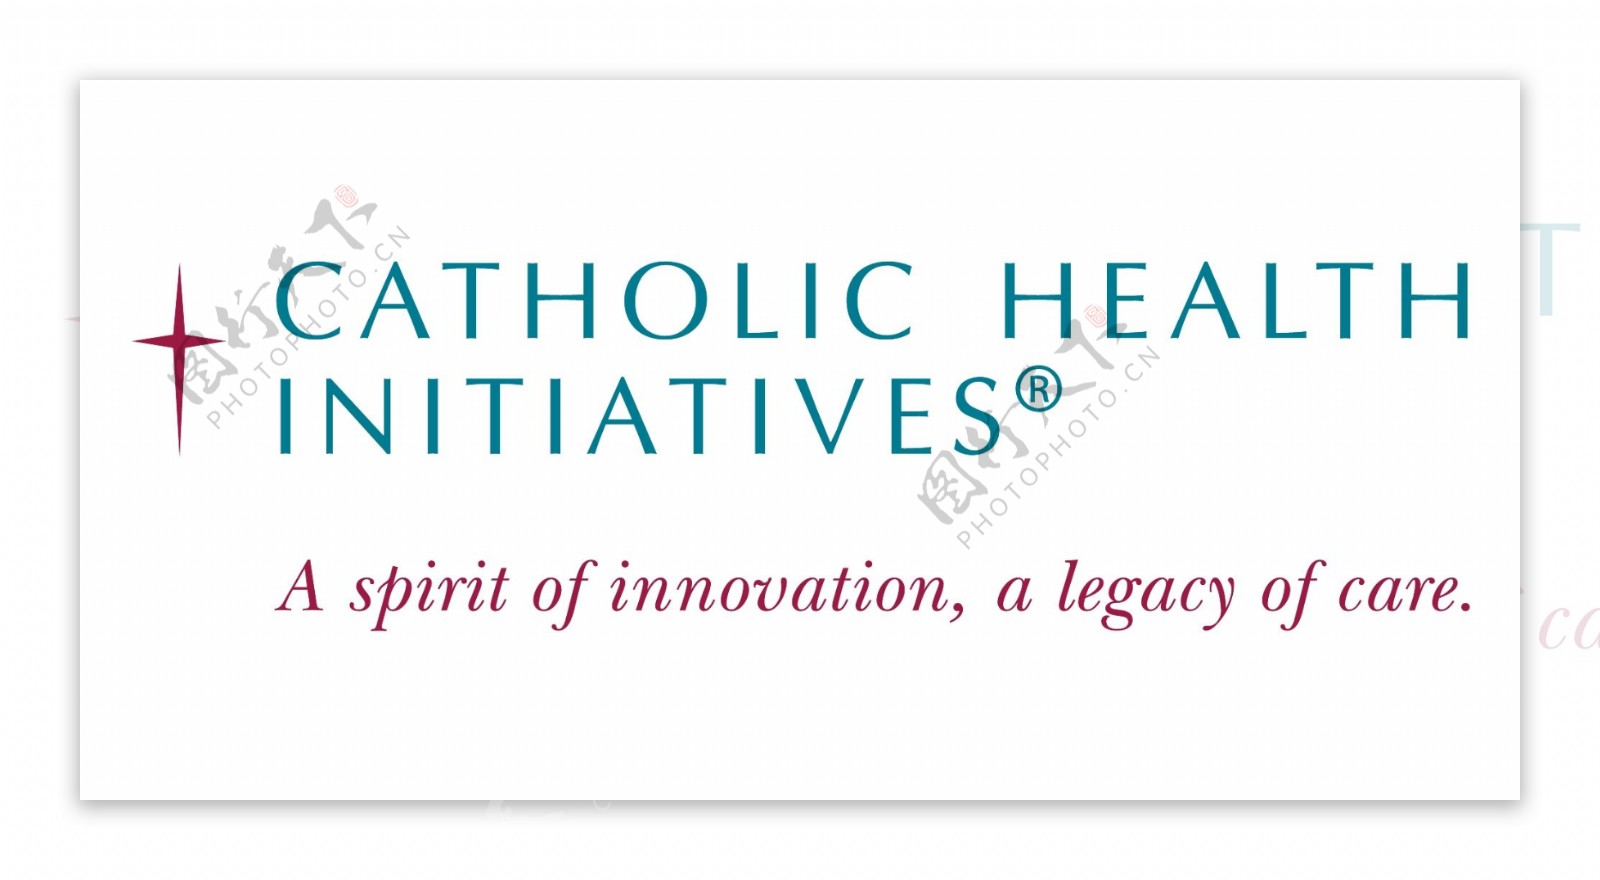 CatholicHealthInitiativeslogo设计欣赏CatholicHealthInitiatives医院LOGO下载标志设计欣赏